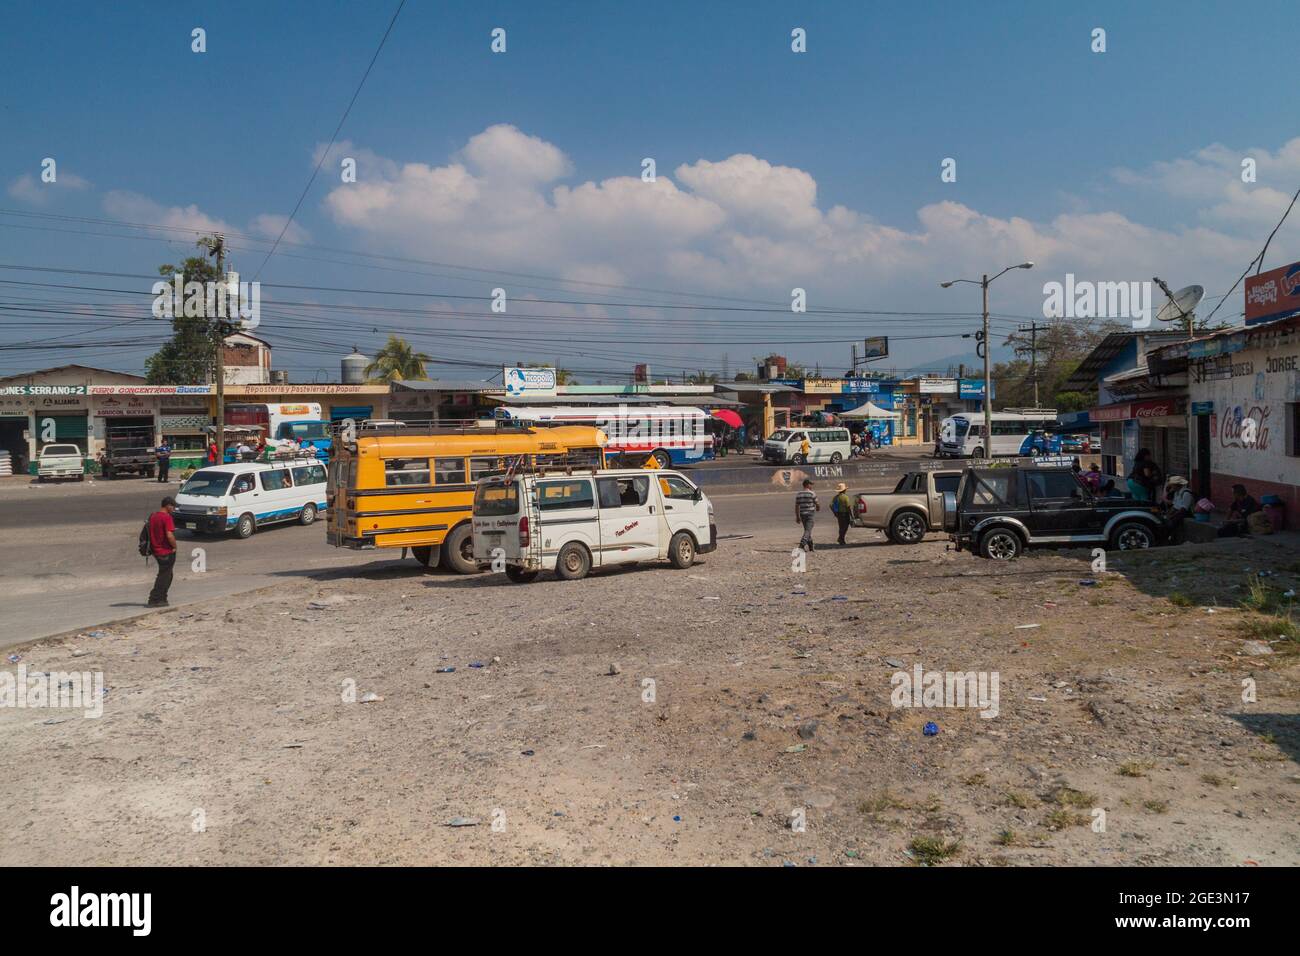 LA ENTRADA, HONDURAS - APRIL 11, 2016: Road traffic in La Entrada town Stock Photo